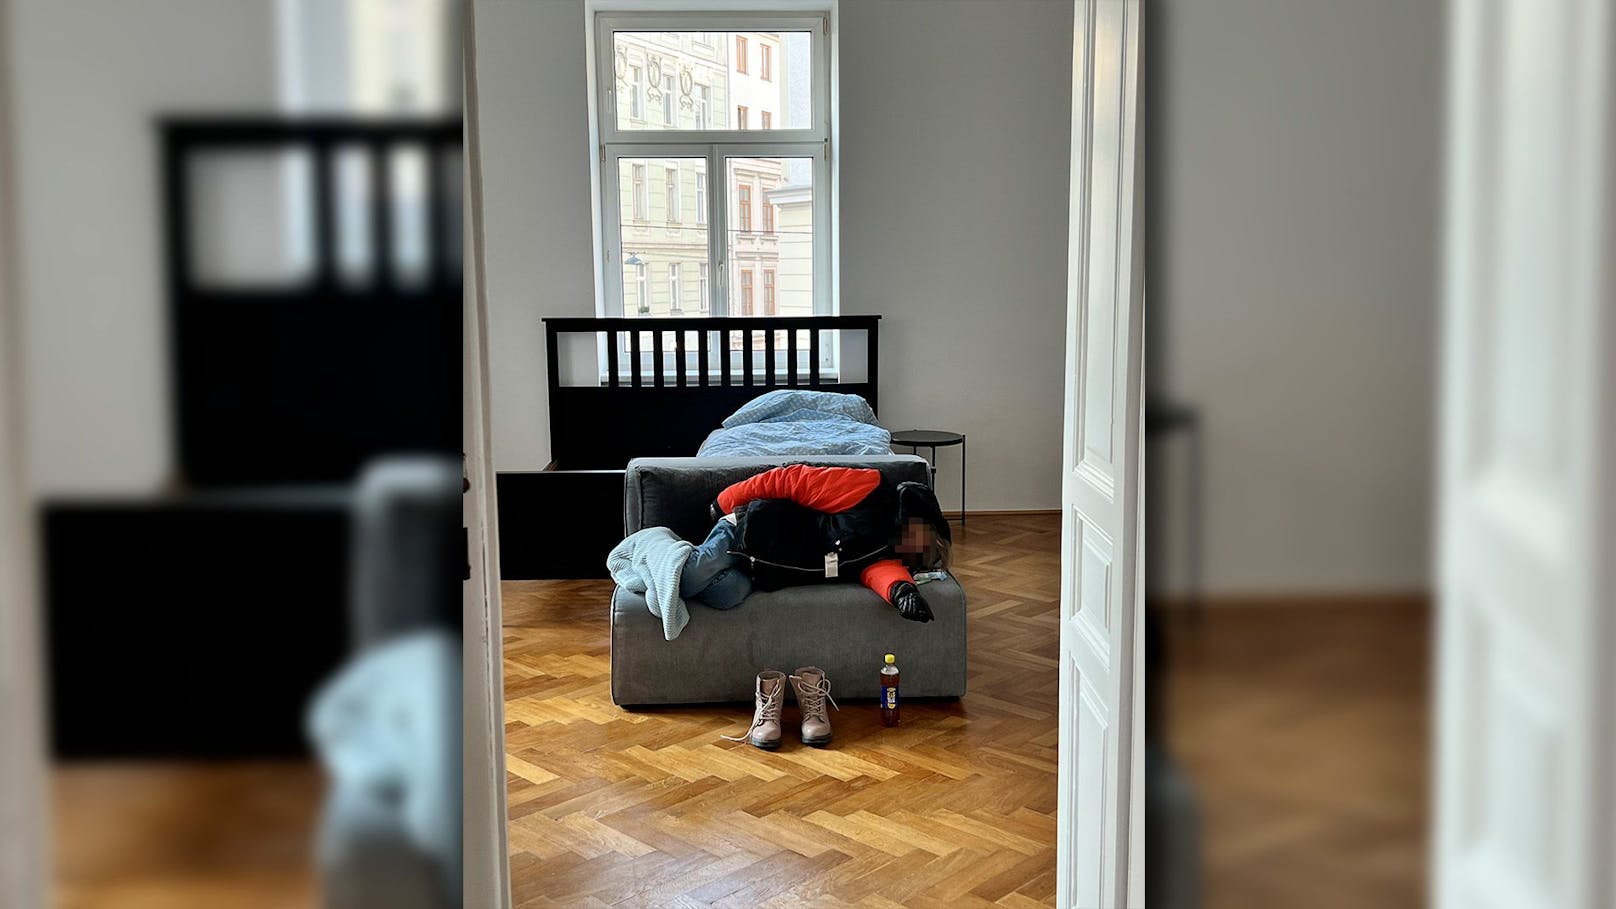 Wiener kommt heim – findet fremde Frau im Schlafzimmer